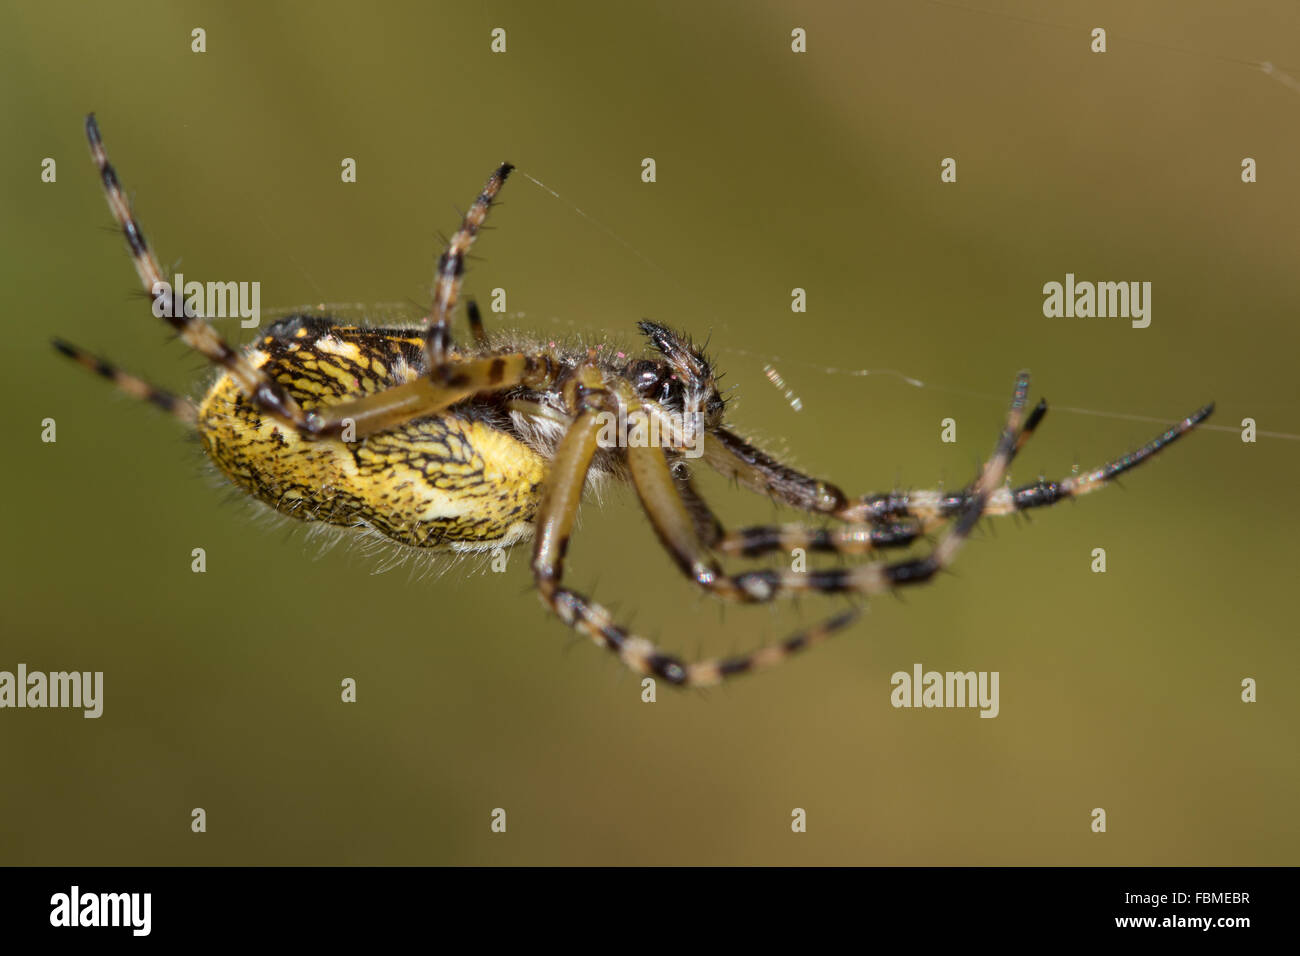 female Oak Spider (Aculepeira ceropegia) on its web Stock Photo